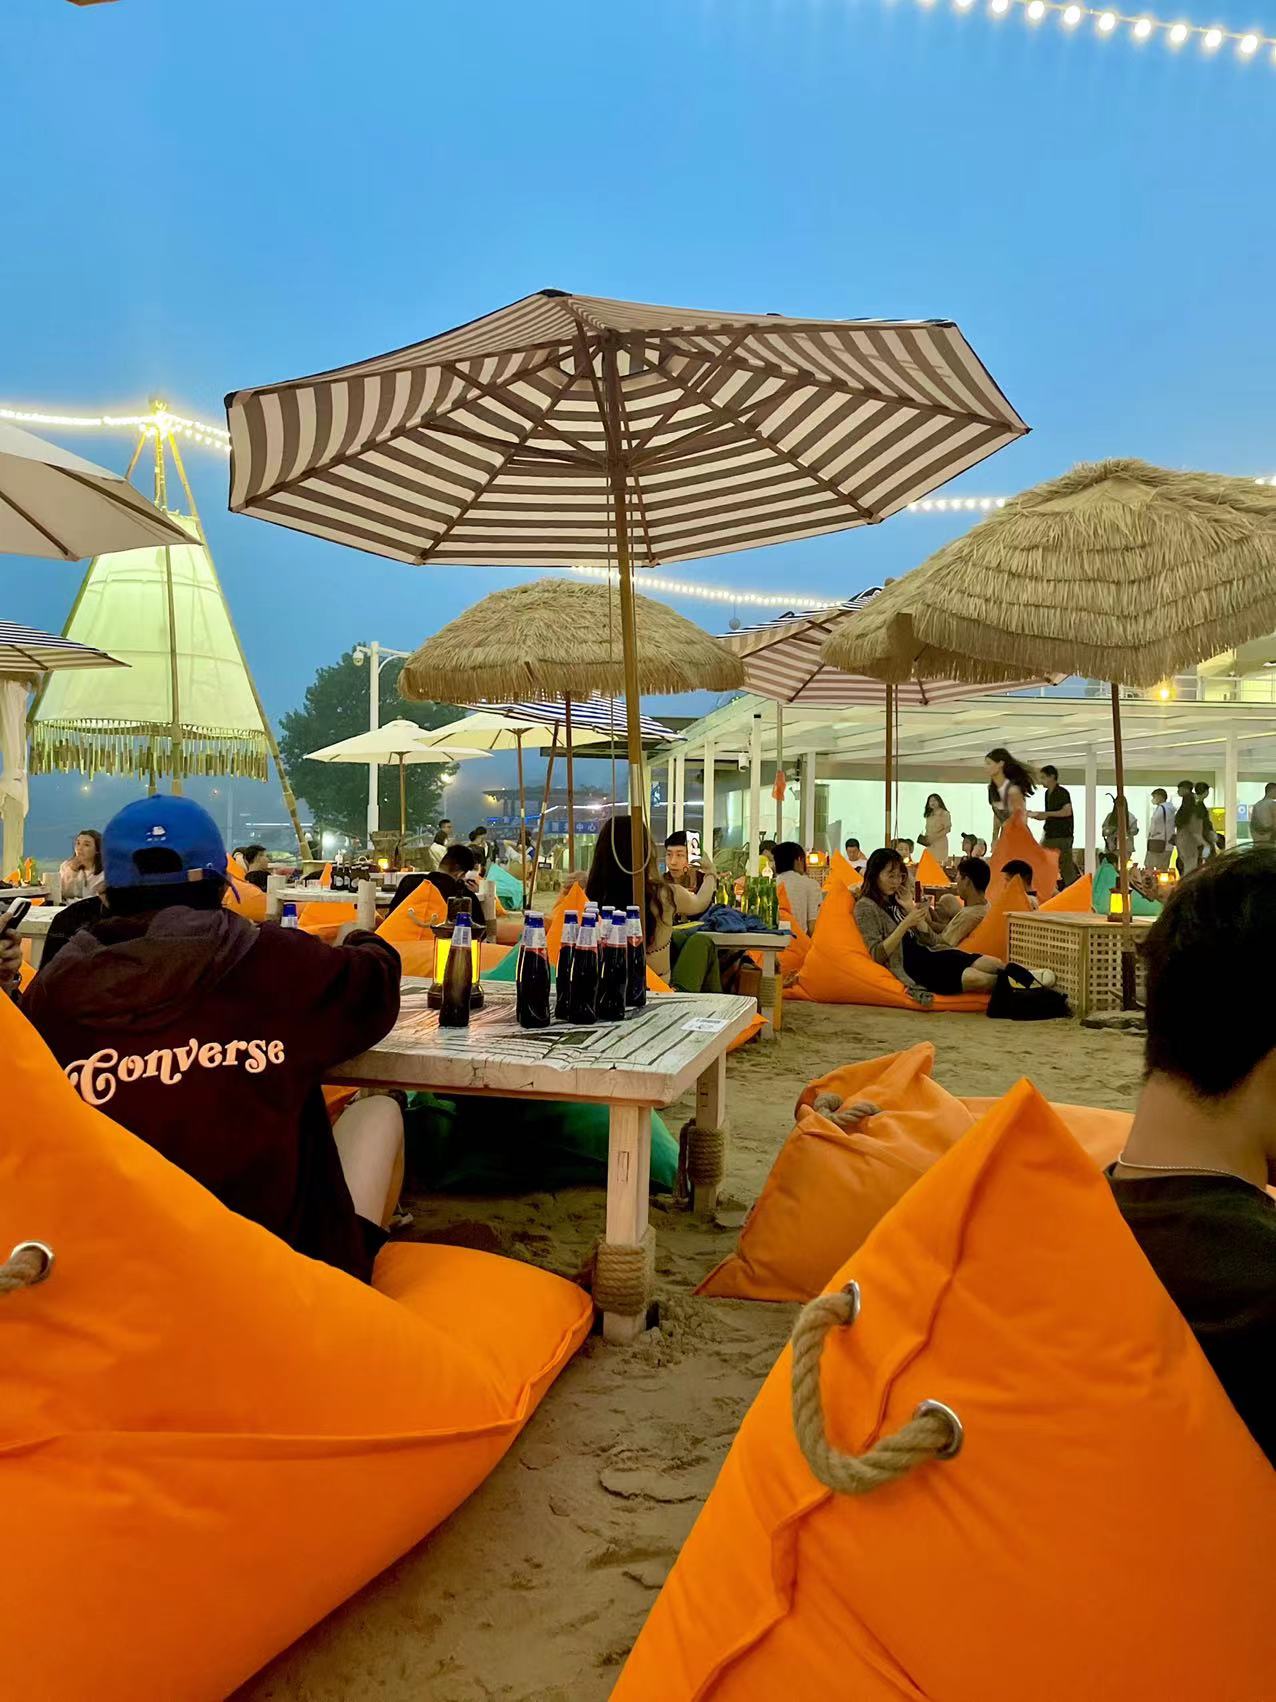 一群年轻人站在海滩上喝啤酒照片摄影图片_ID:317477475-Veer图库